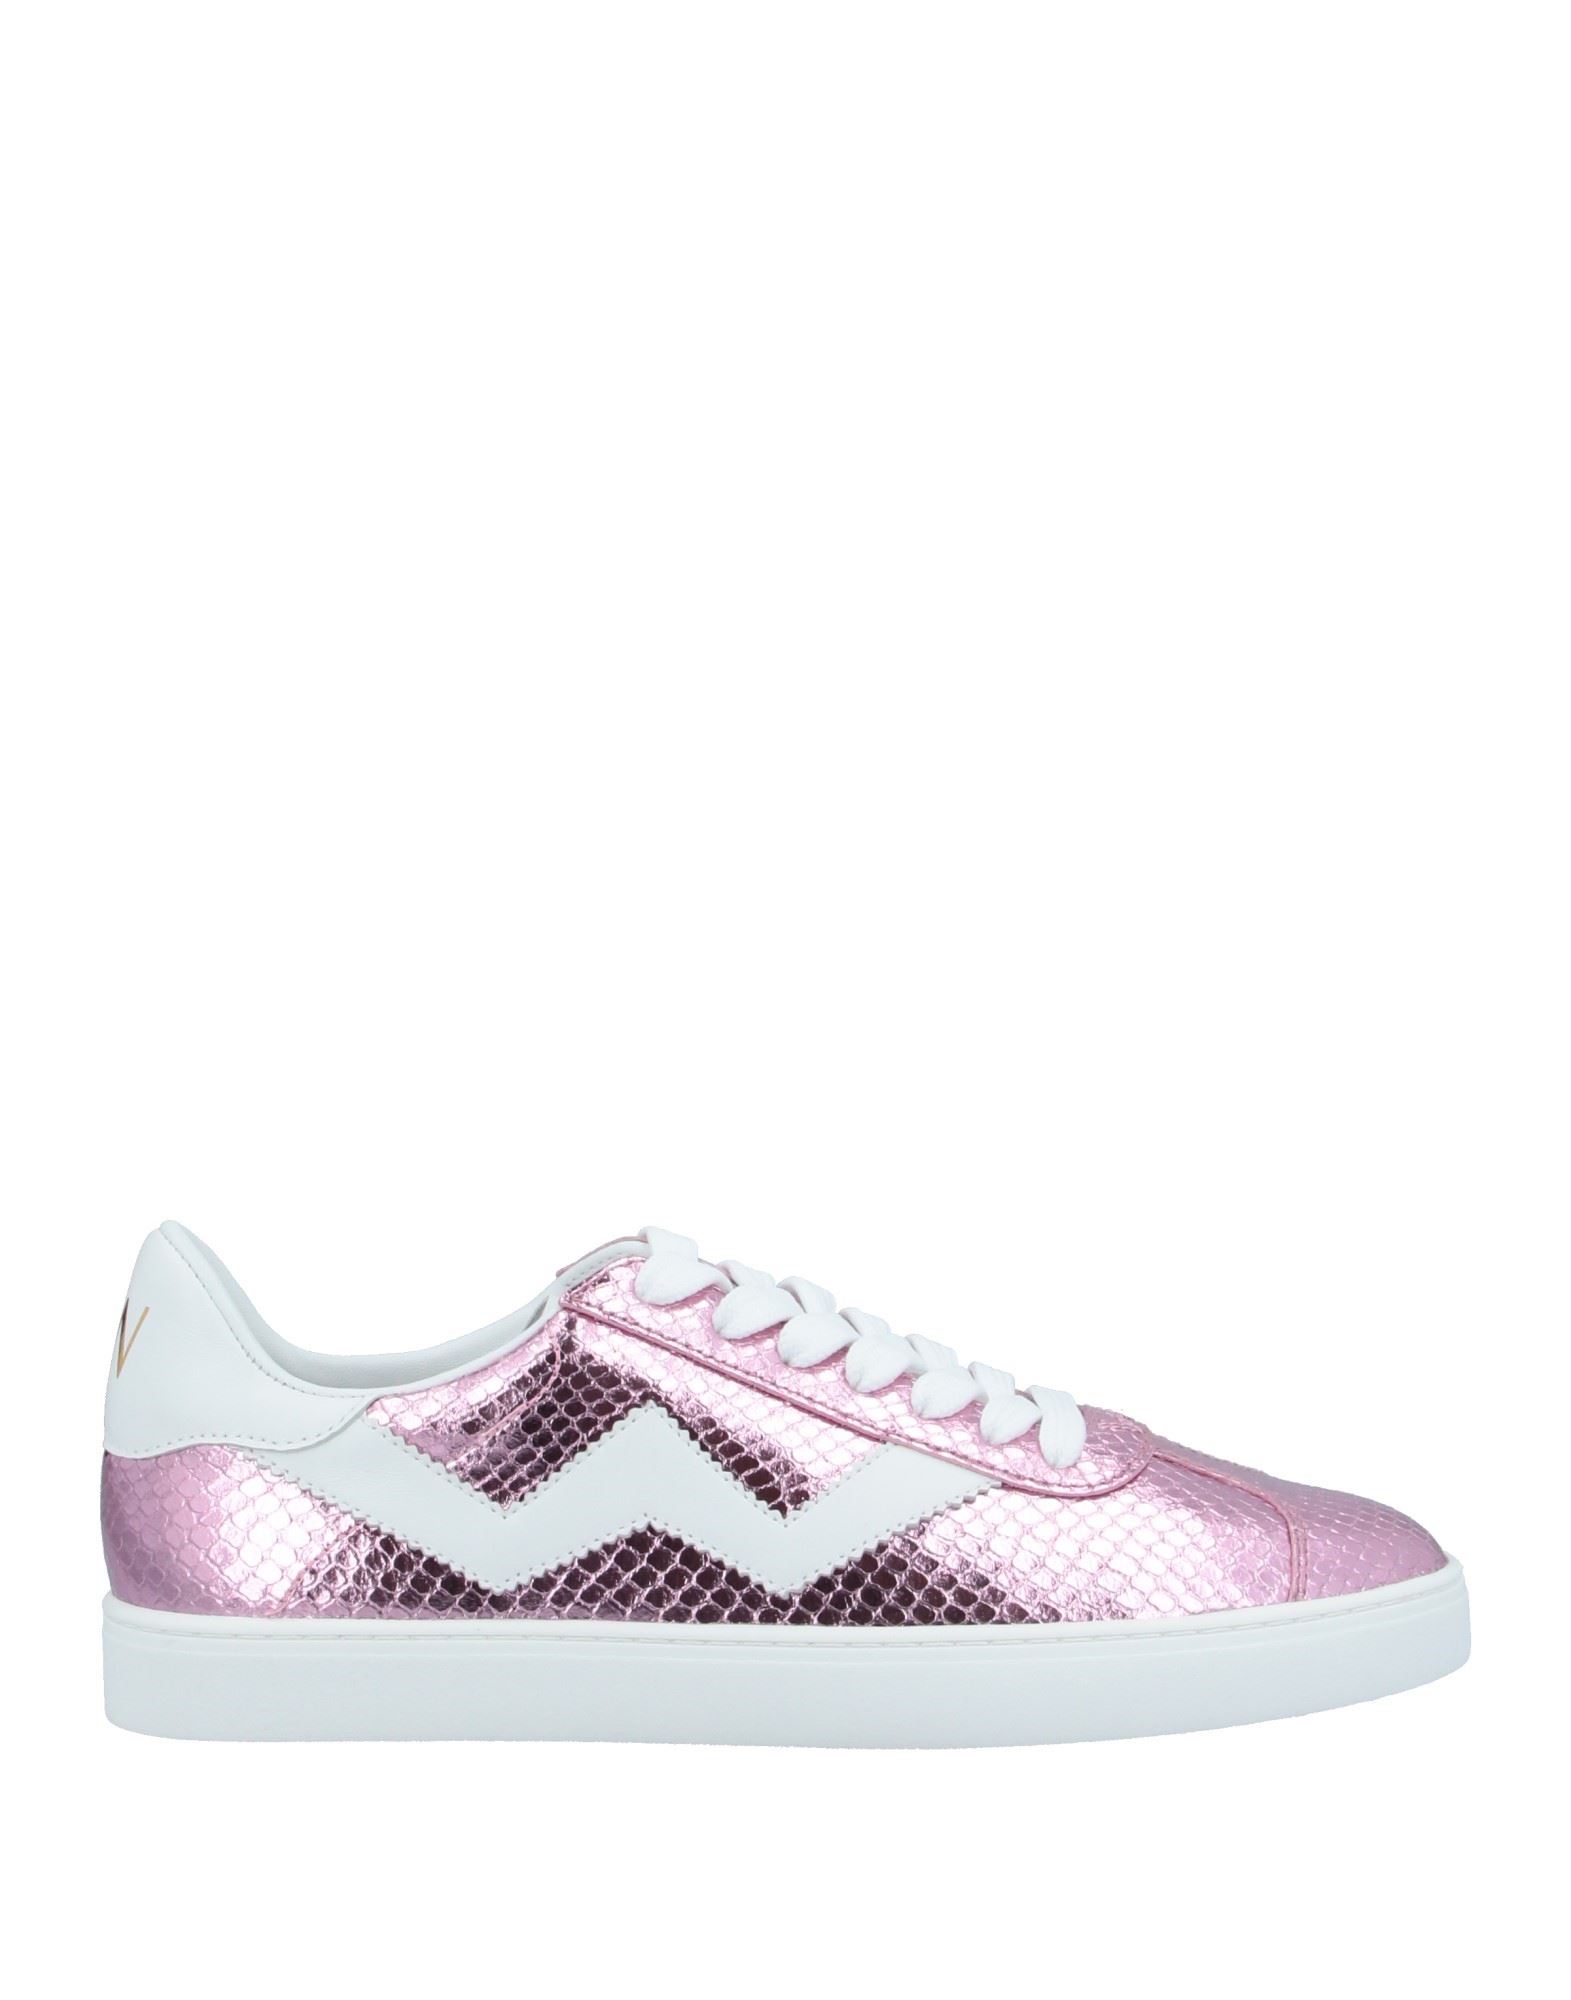 Stuart Weitzman Sneakers In Pink